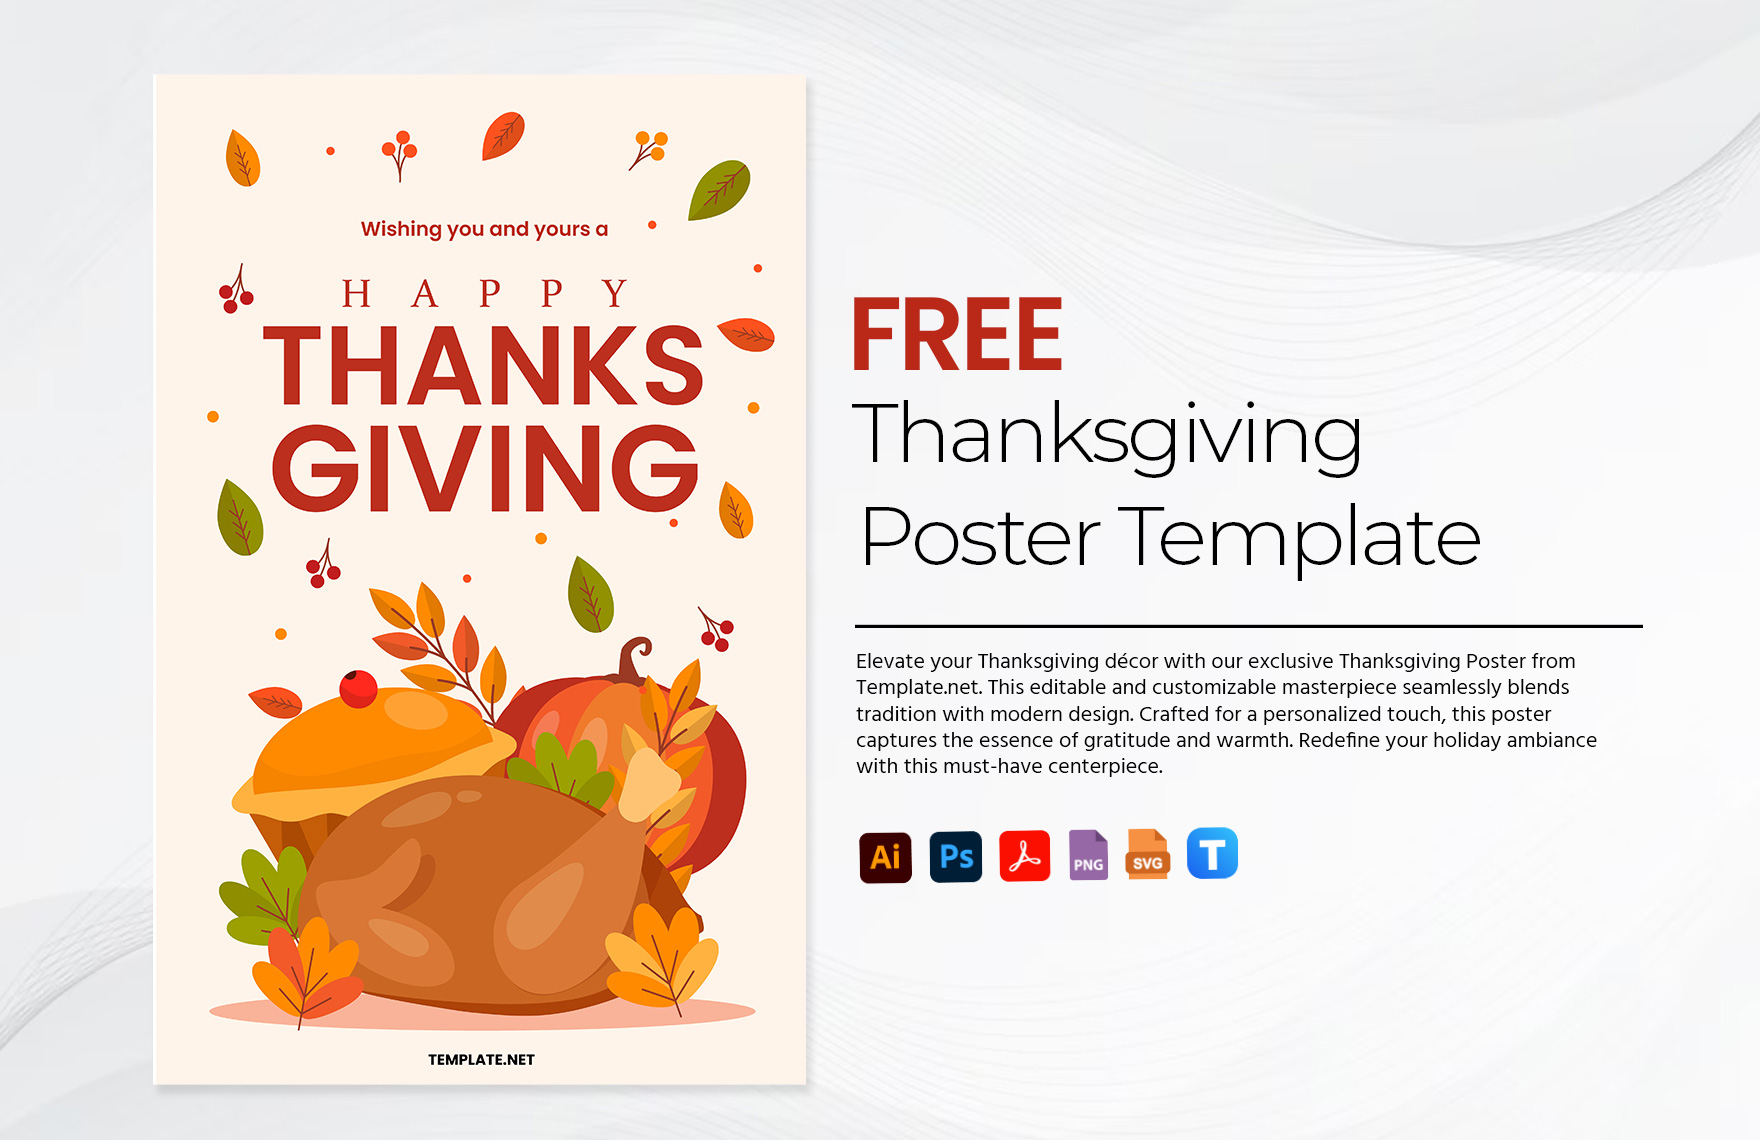 Free Thanksgiving Poster